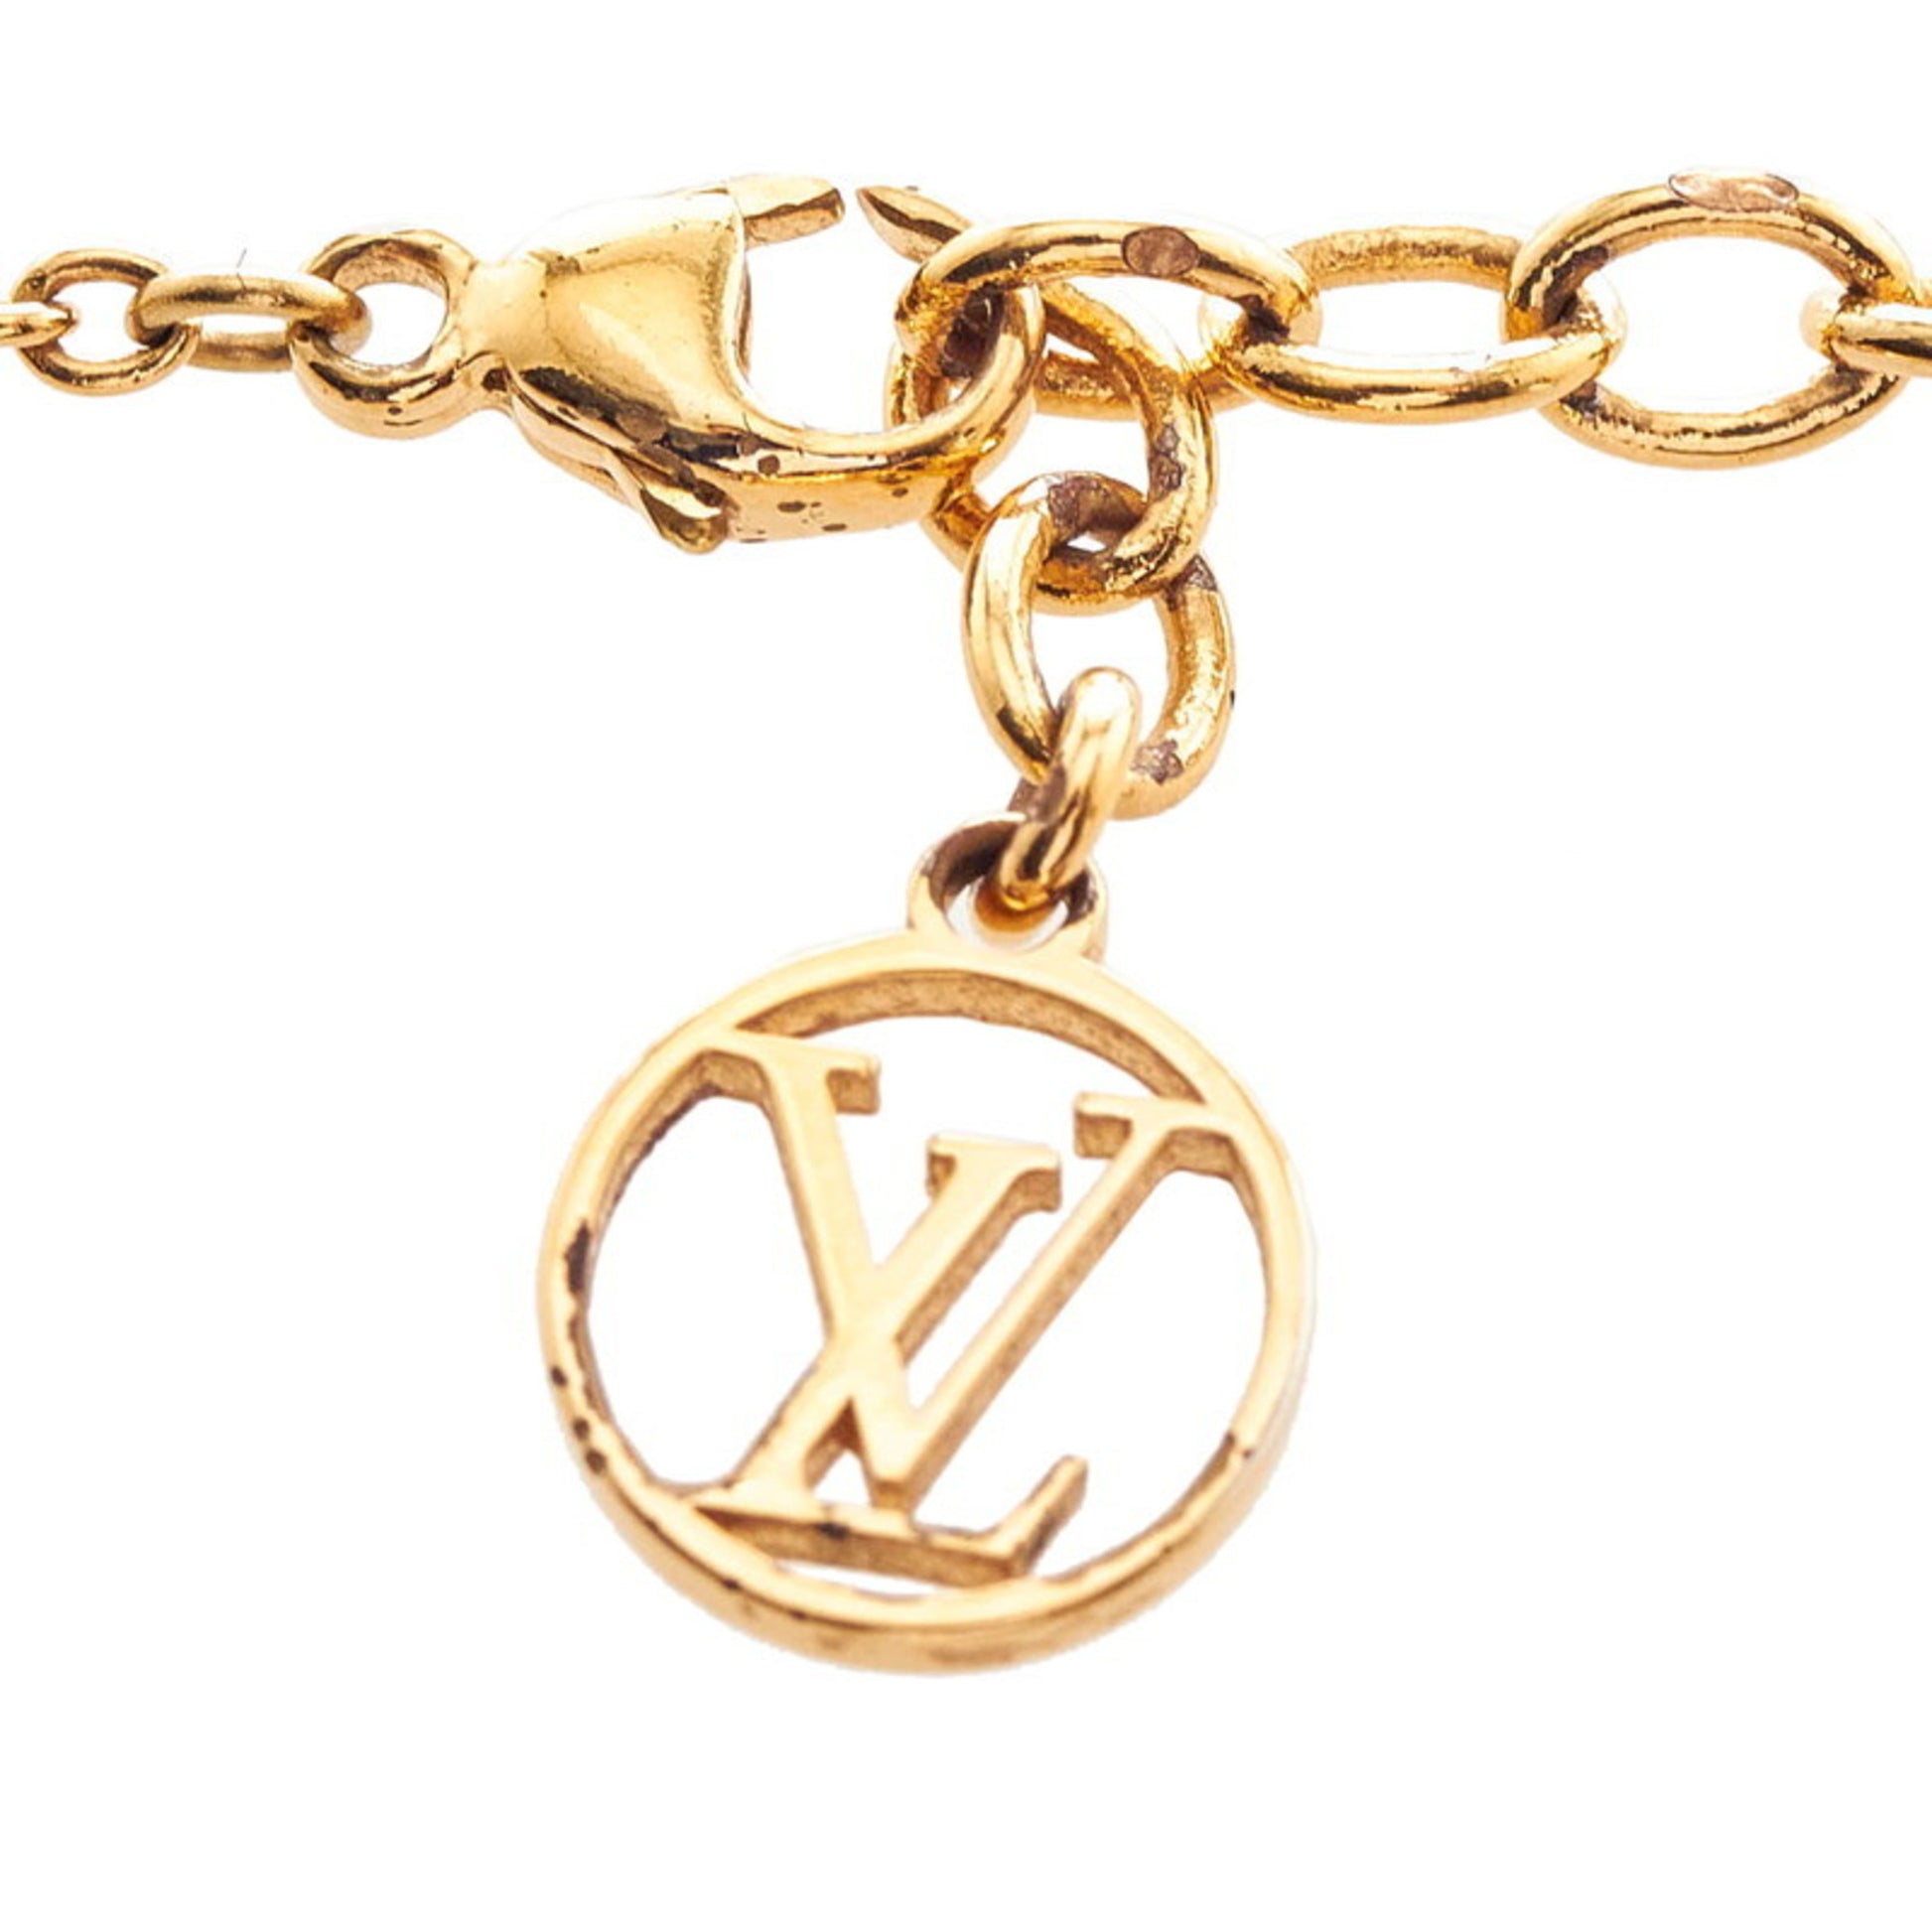 Shop Louis Vuitton Essential v necklace (M61083) by Milanoo